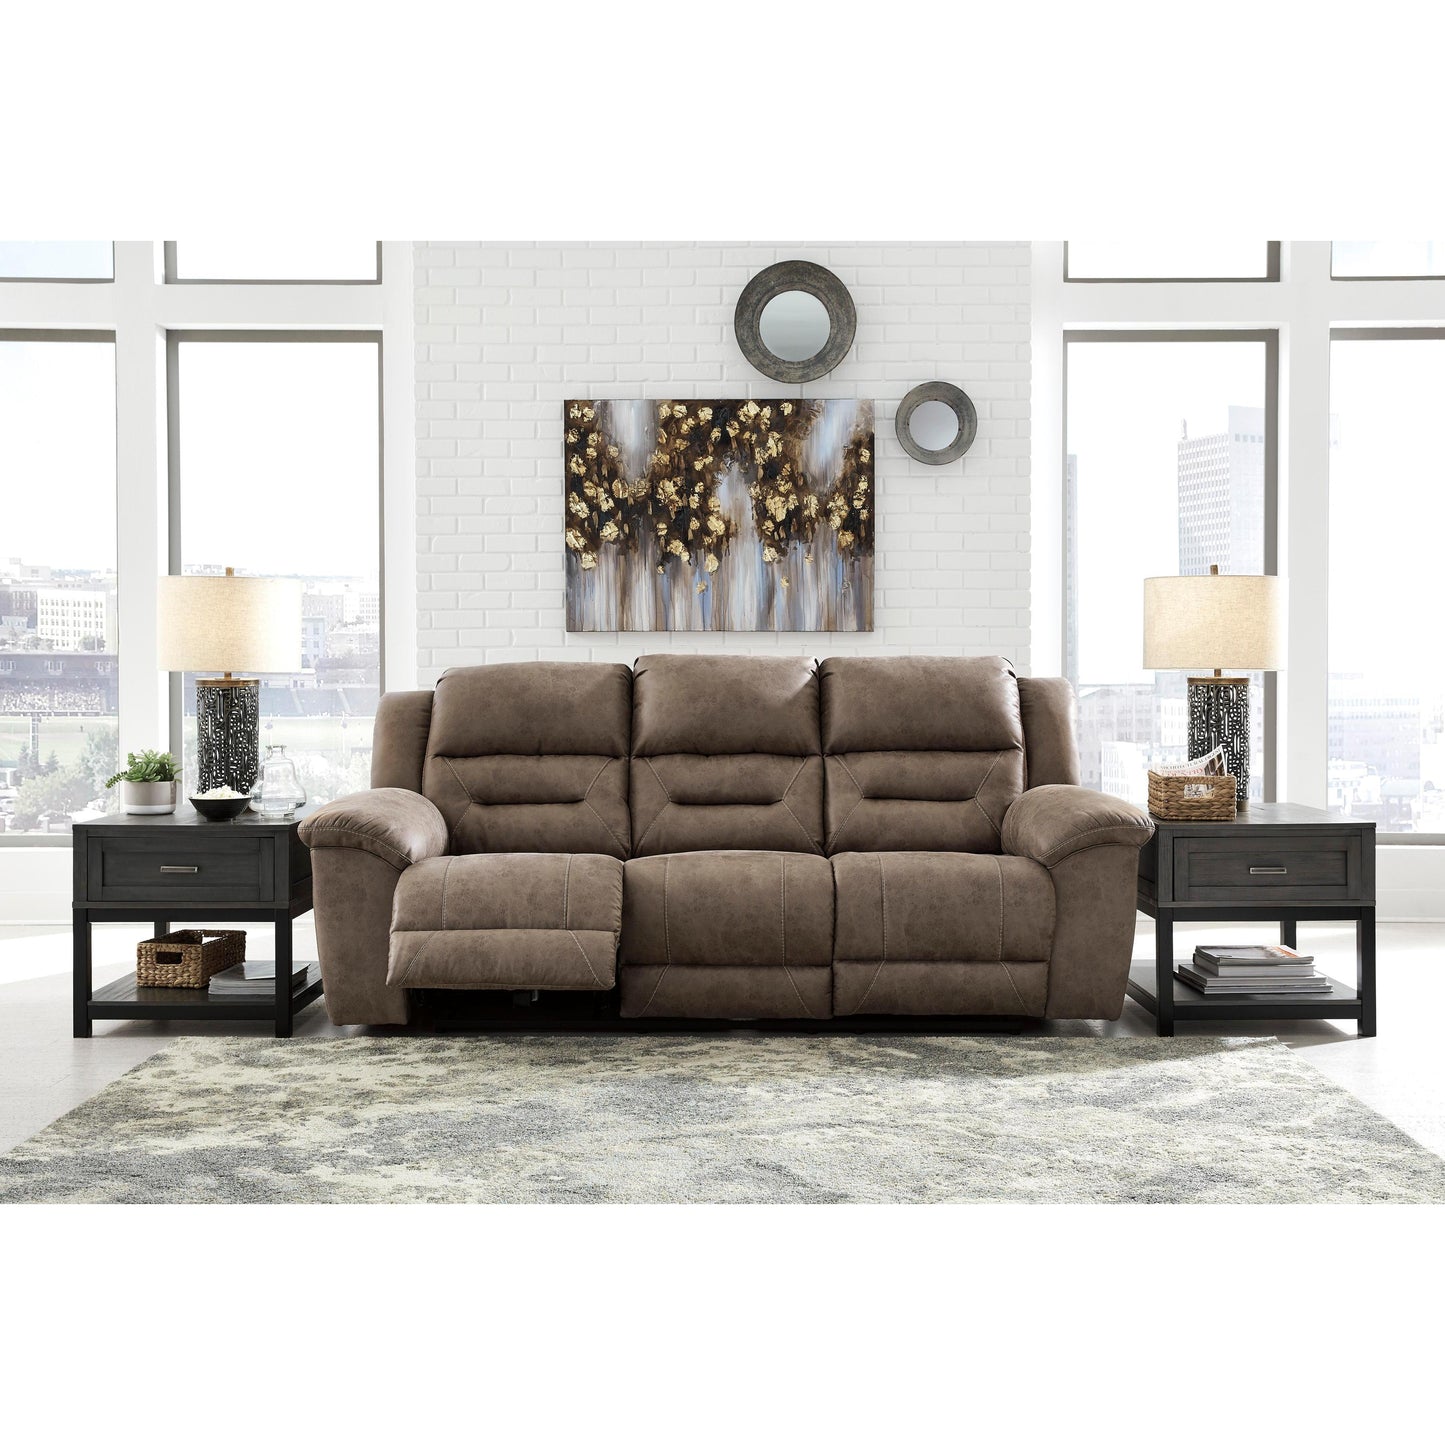 Signature Design by Ashley Stoneland 39905U6 3 pc Reclining Living Room Set IMAGE 2